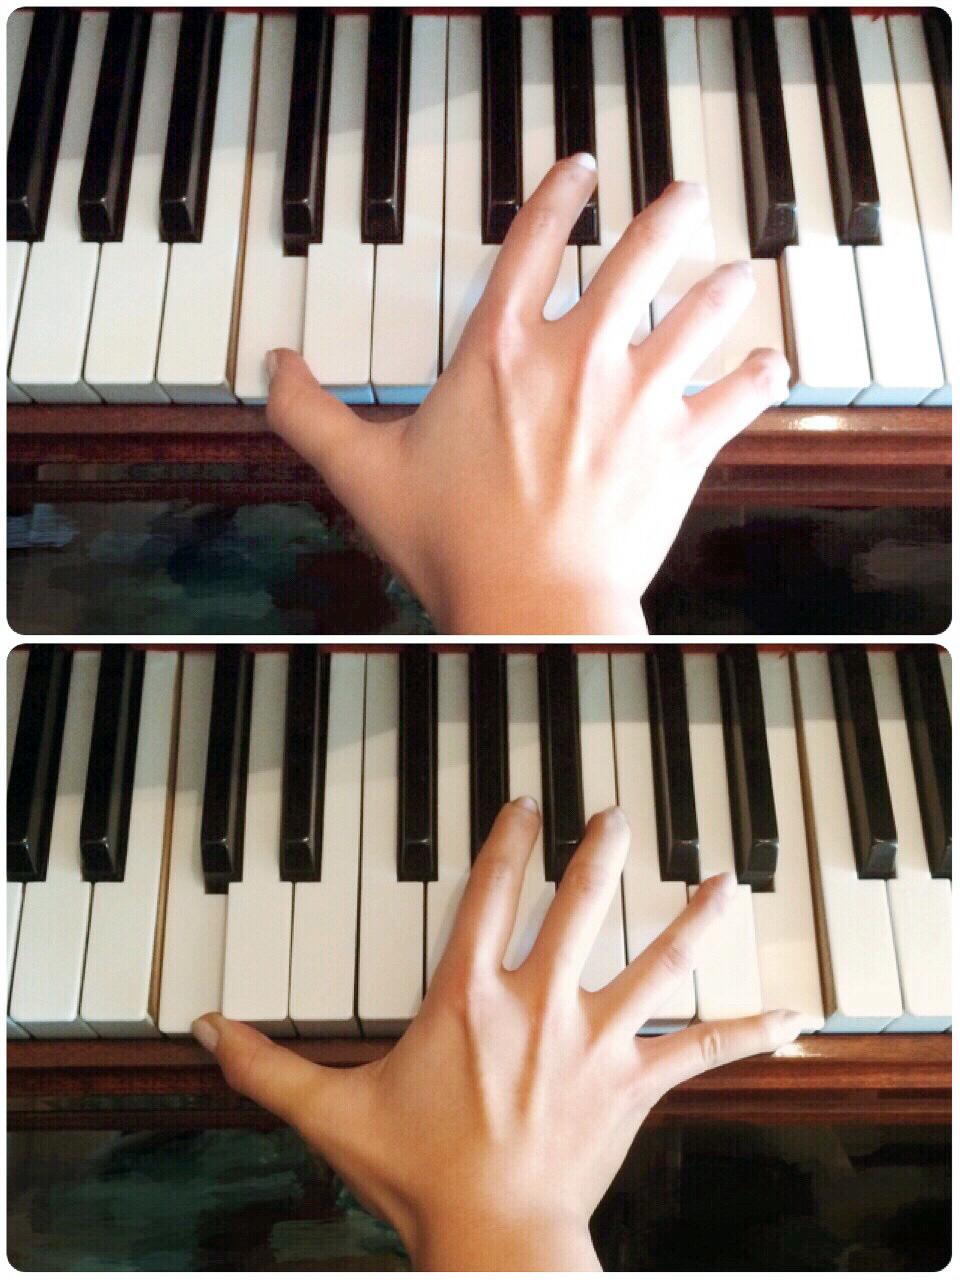 长年演奏钢琴的人的手会有哪些特征?